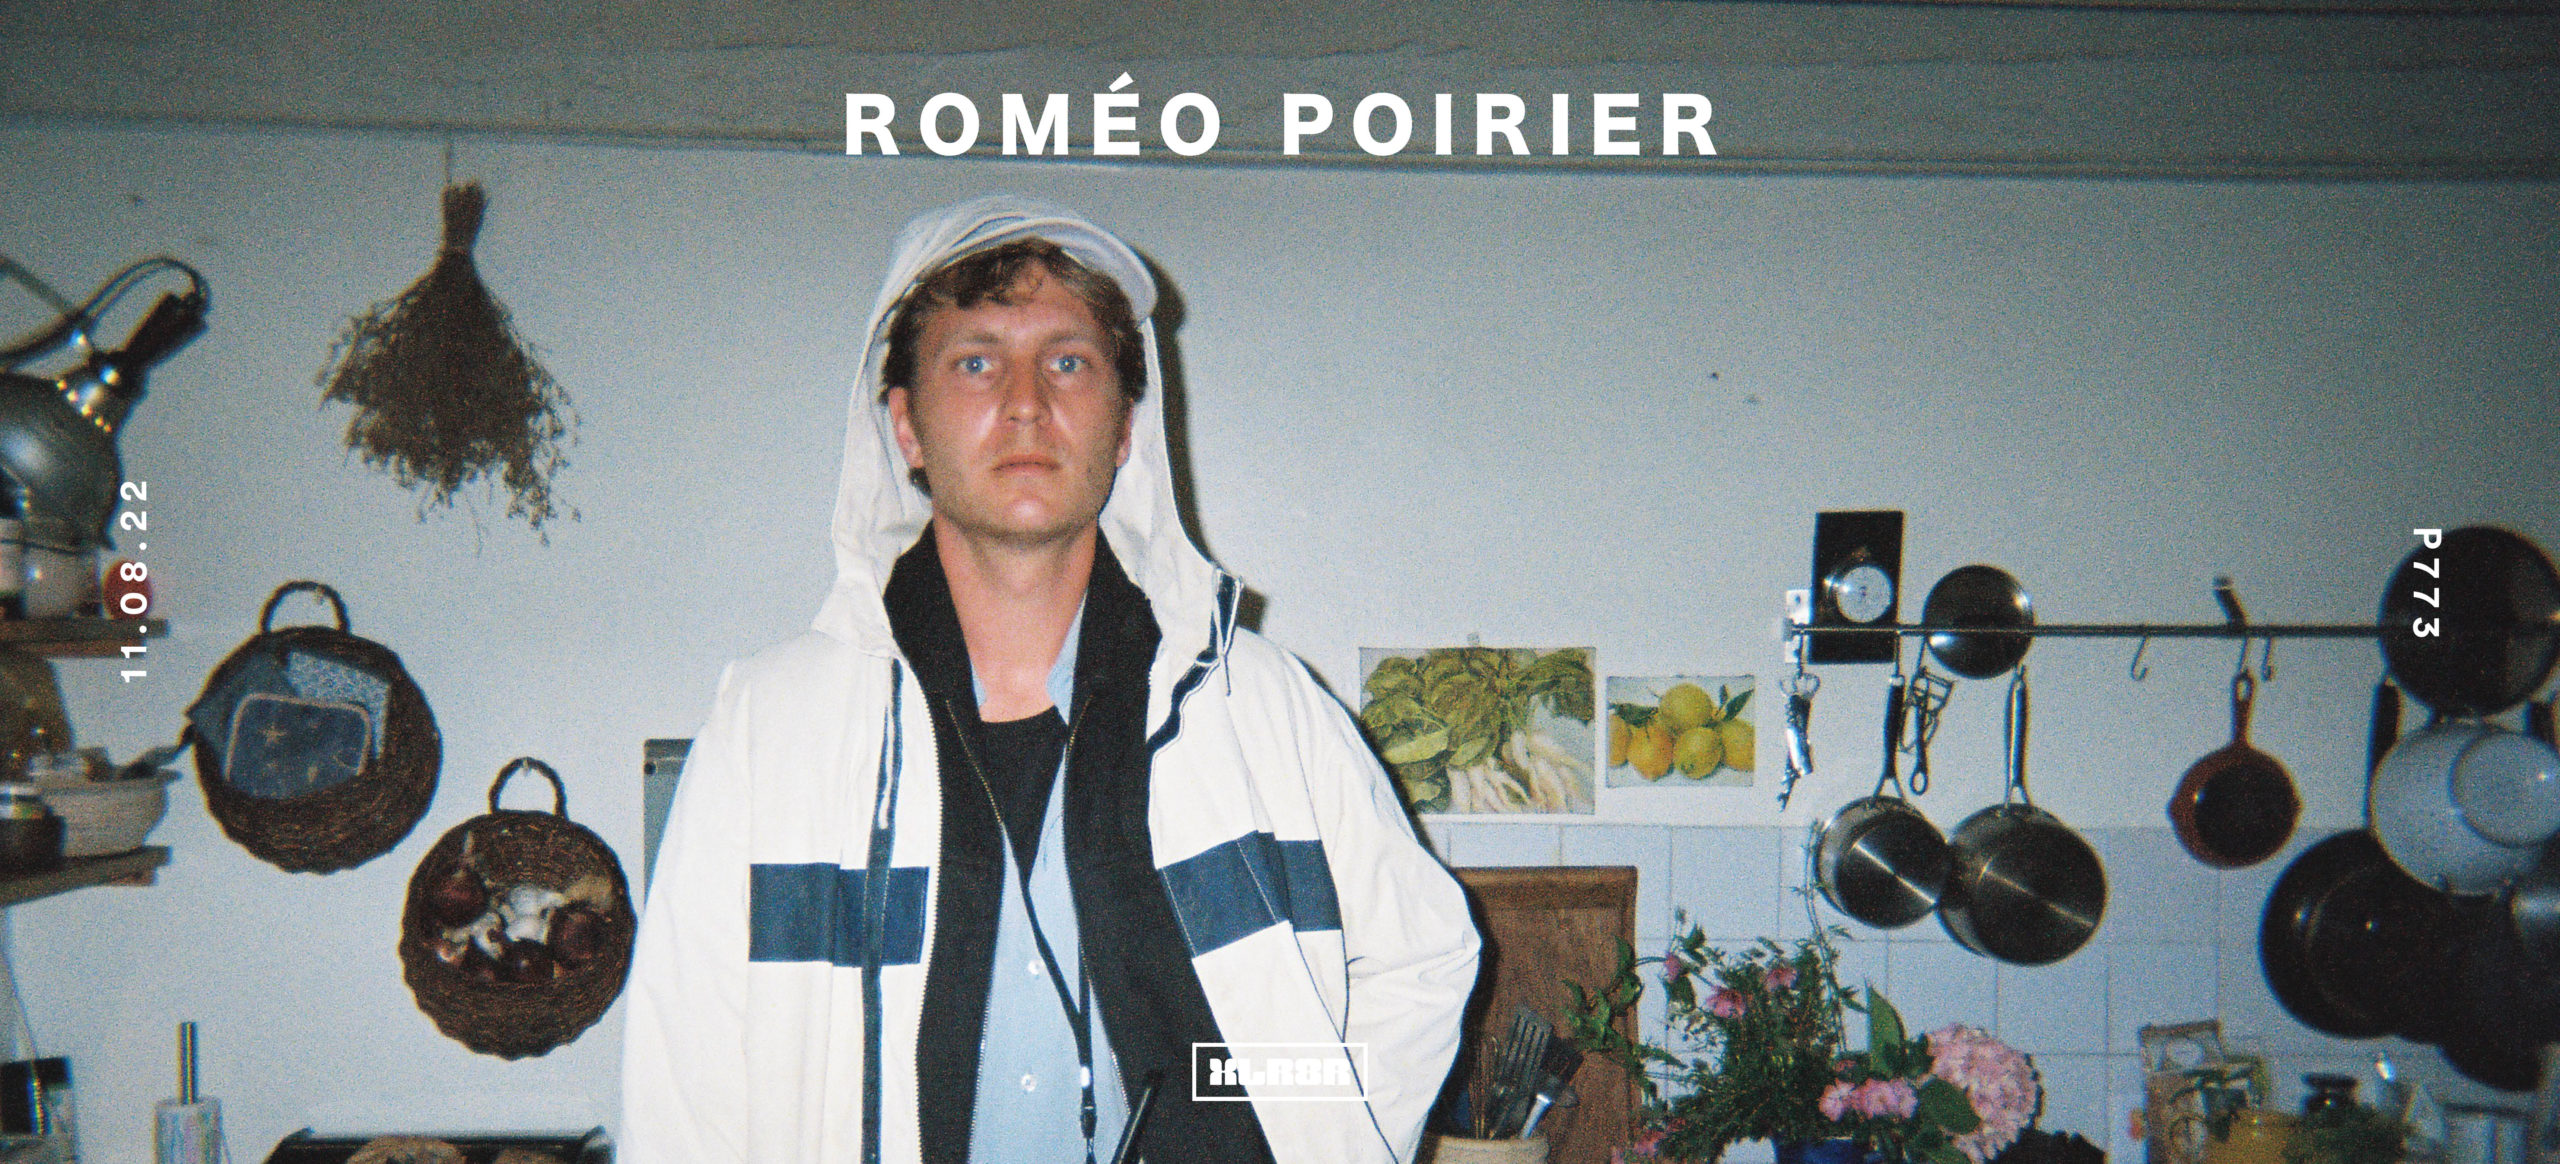 Podcast 773: Roméo PoirierPodcast 773: Roméo Poirier